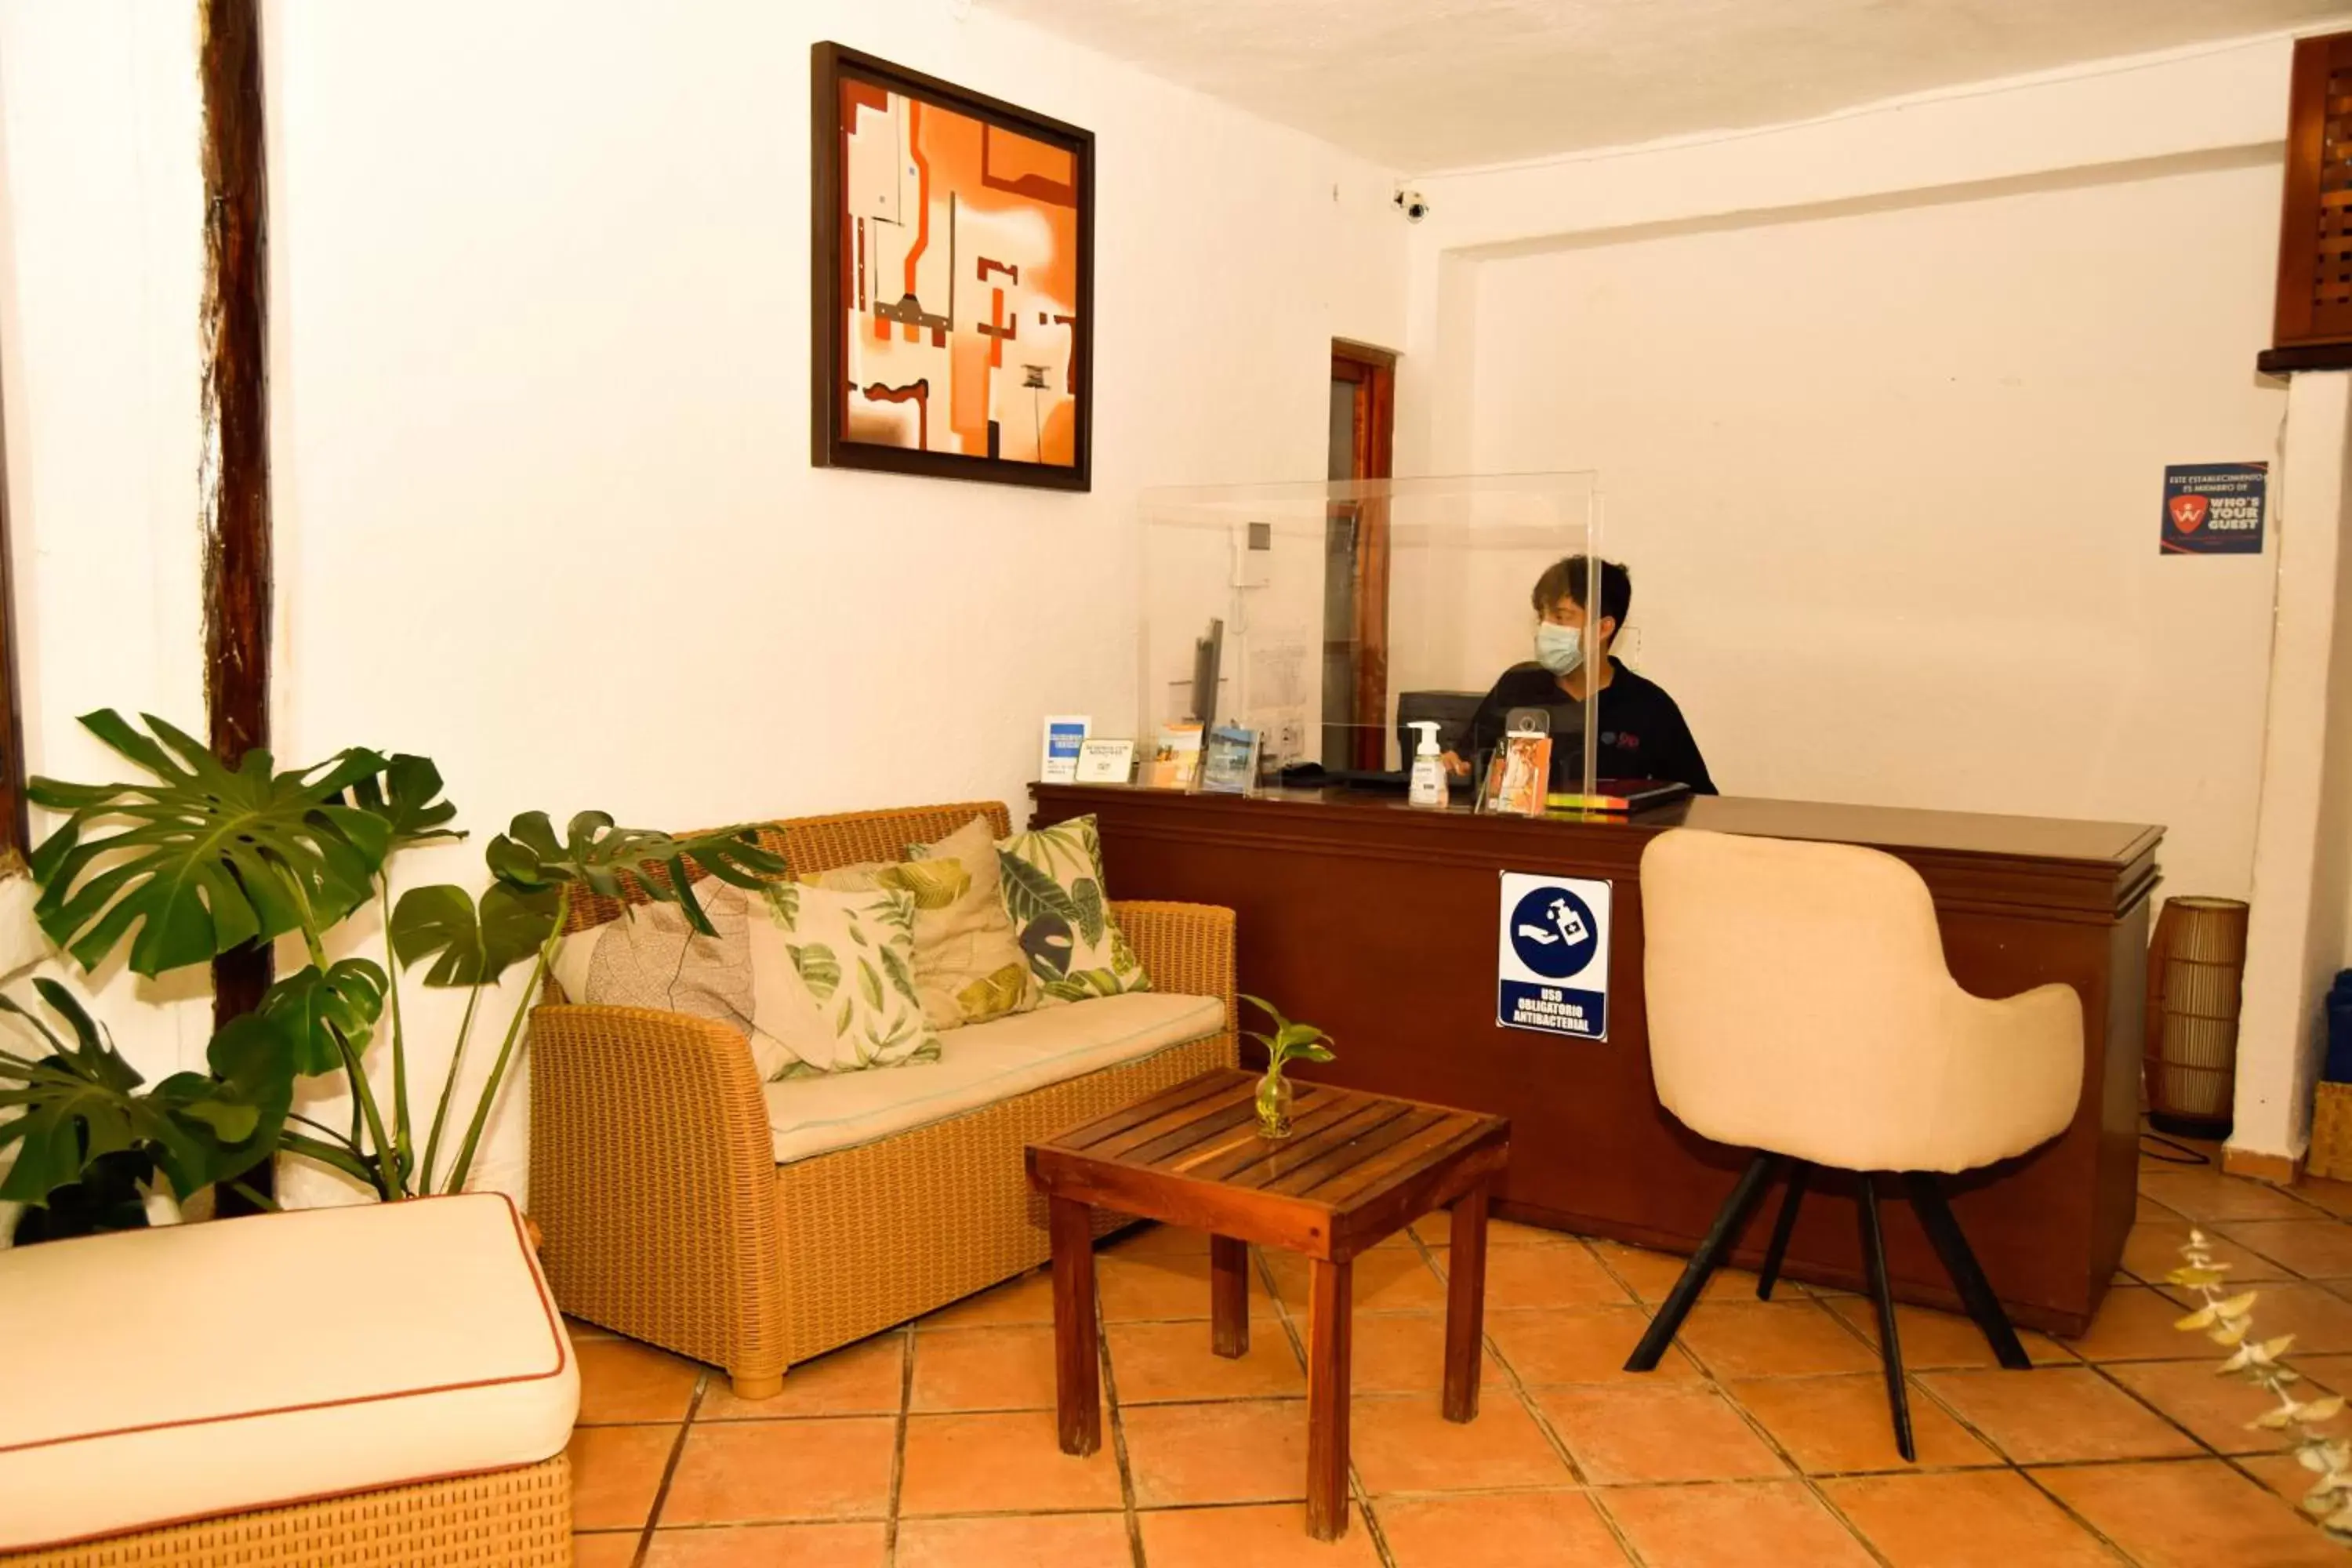 Lobby or reception, Lobby/Reception in Siesta Fiesta Hotel - 5th Avenue